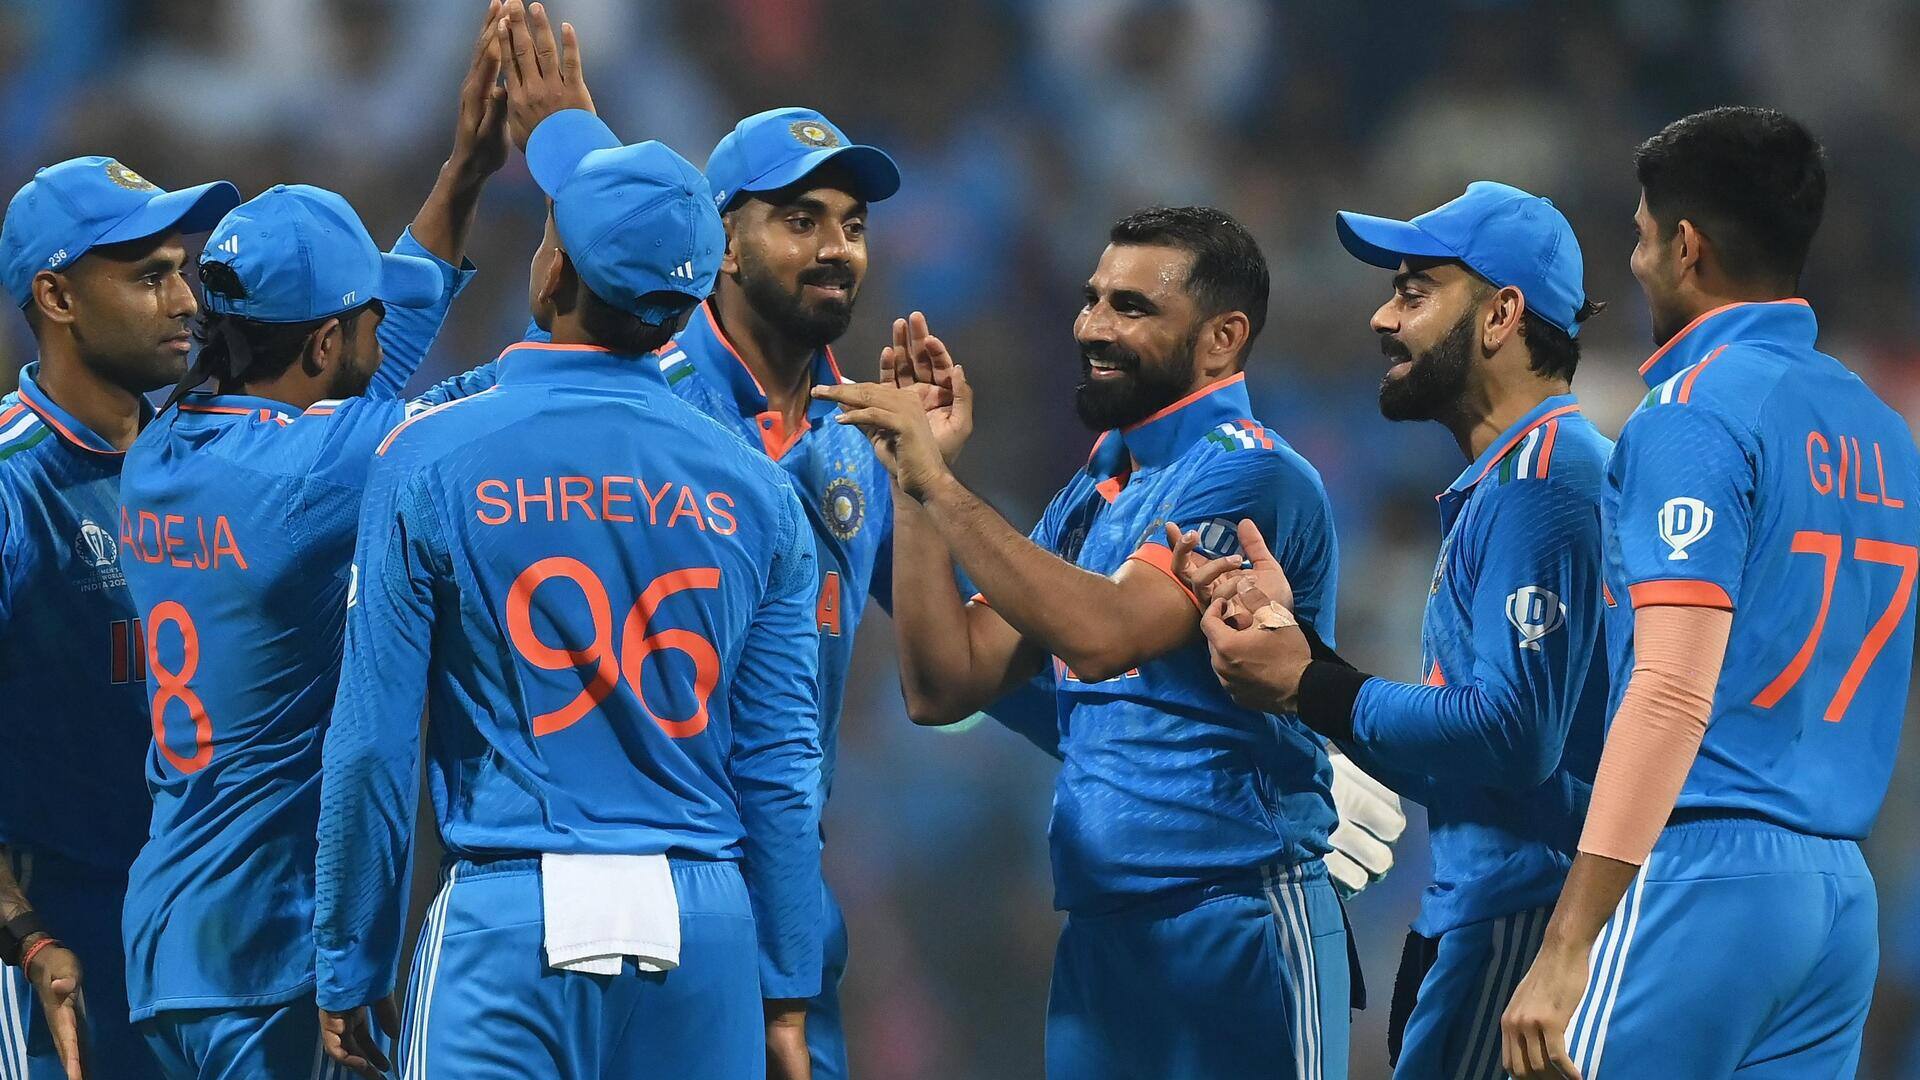 वनडे विश्व कप: भारतीय टीम ने व्यक्तिगत शतक के बिना बनाया उच्चतम टीम स्कोर, जानिए आंकड़े